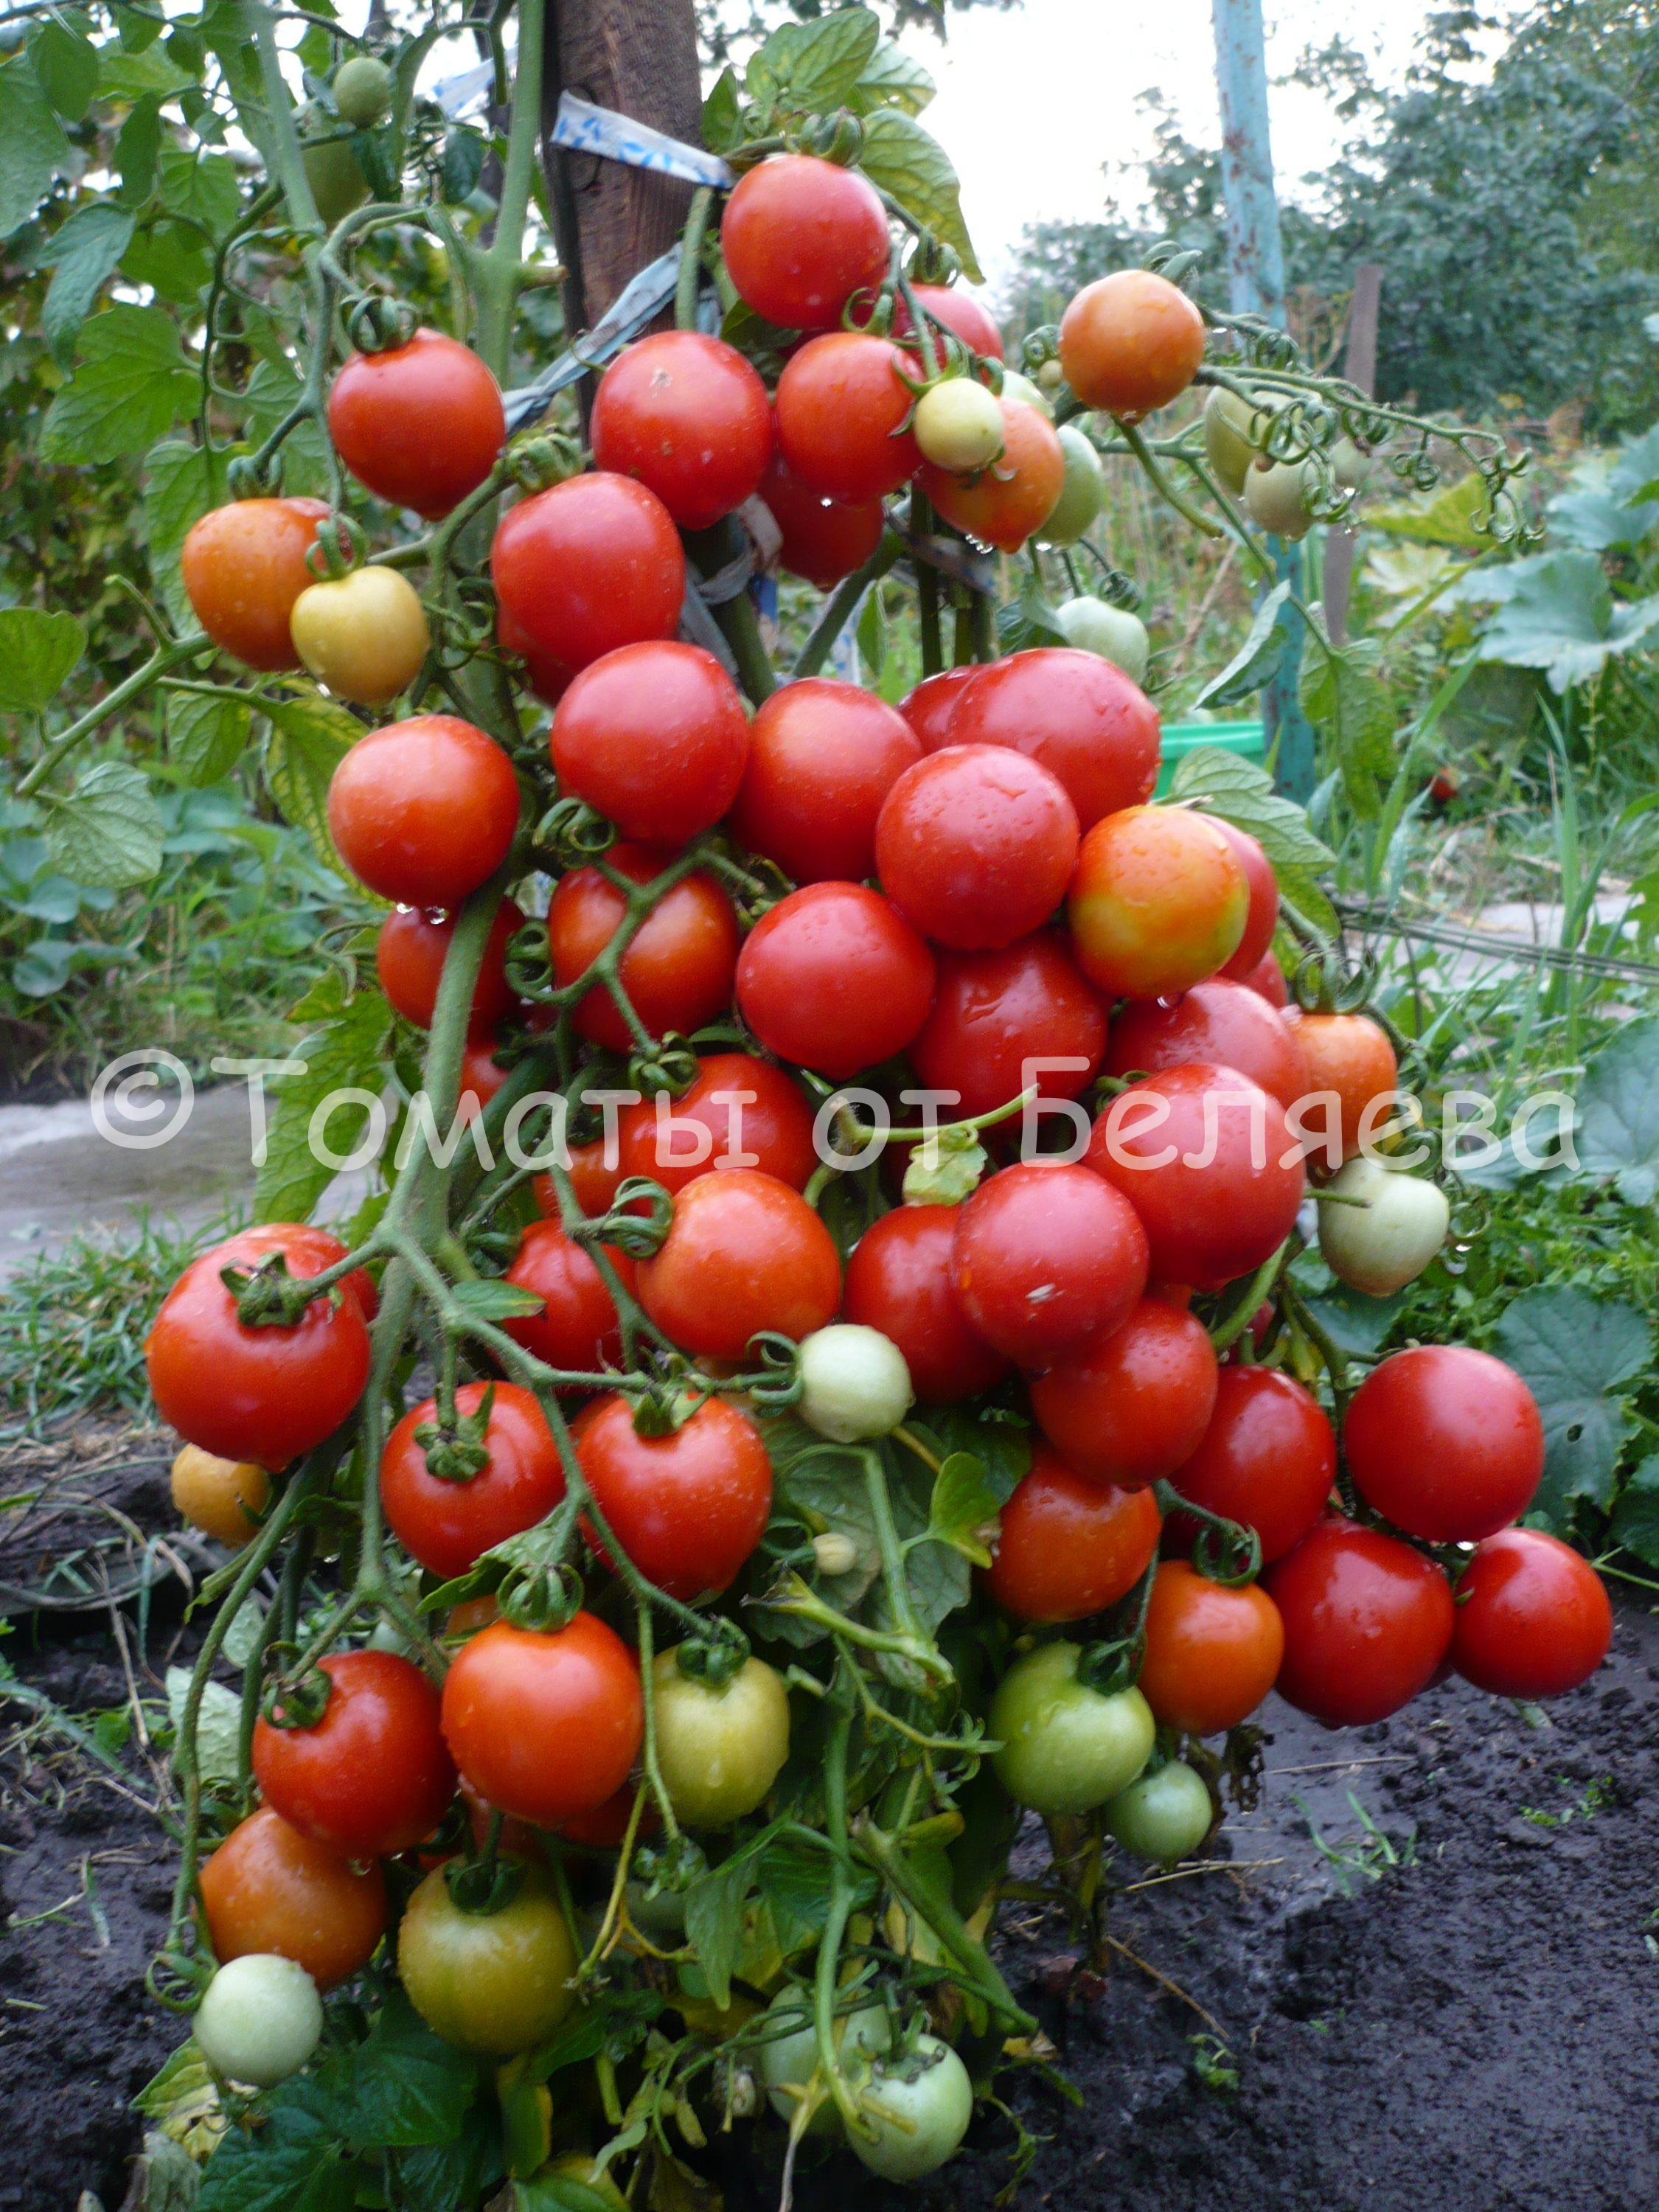 Как вырастить томаты от Беляева